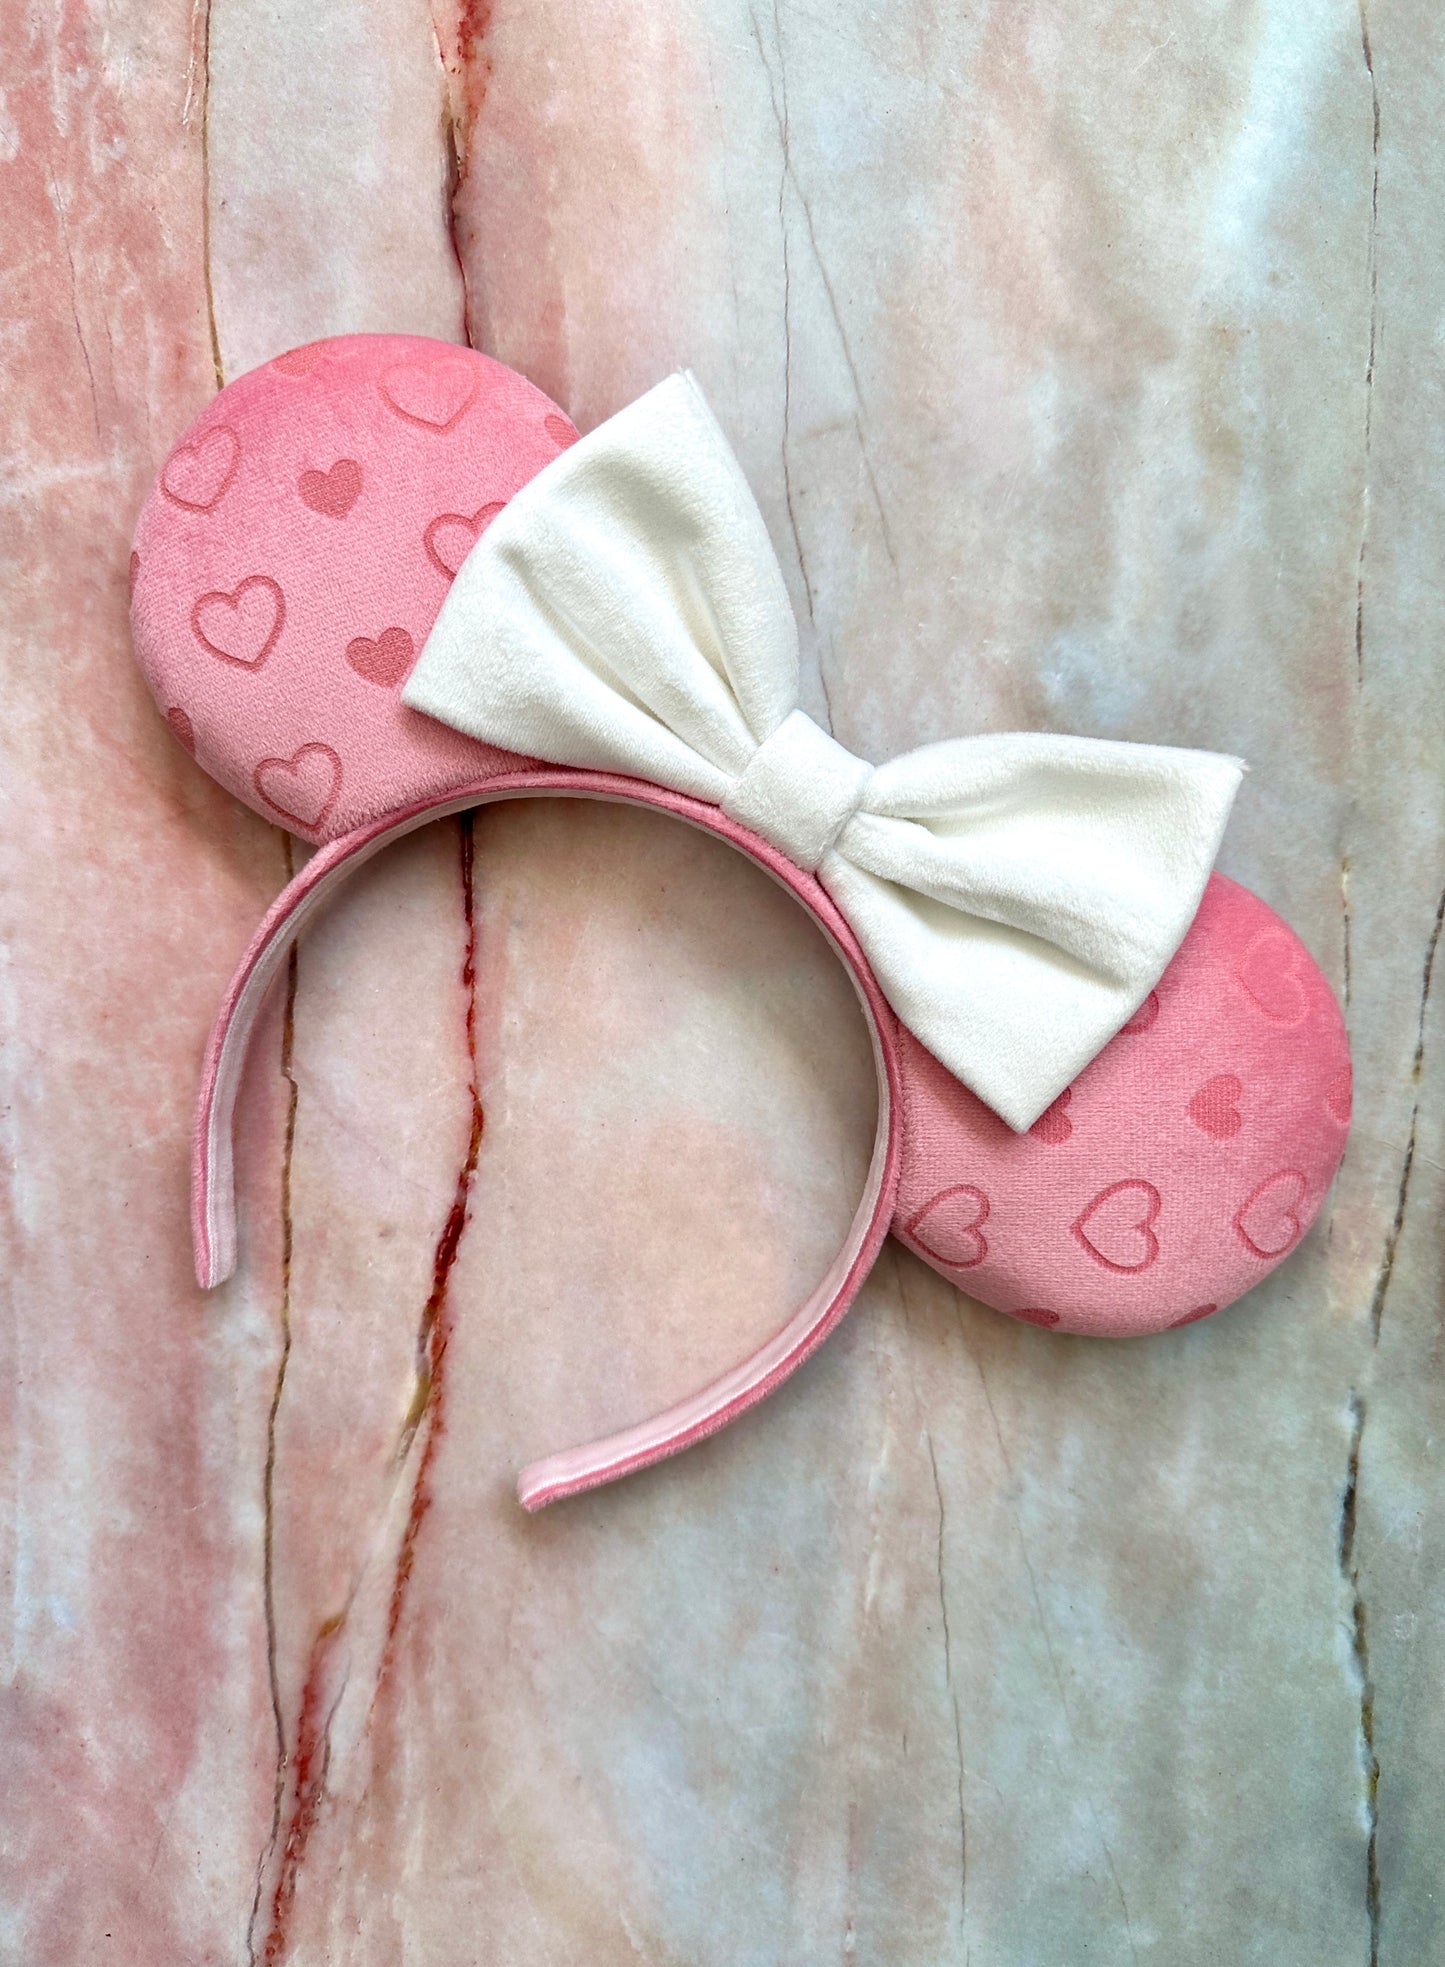 True Love’s Kiss Engraved Velvet Mouse Ears